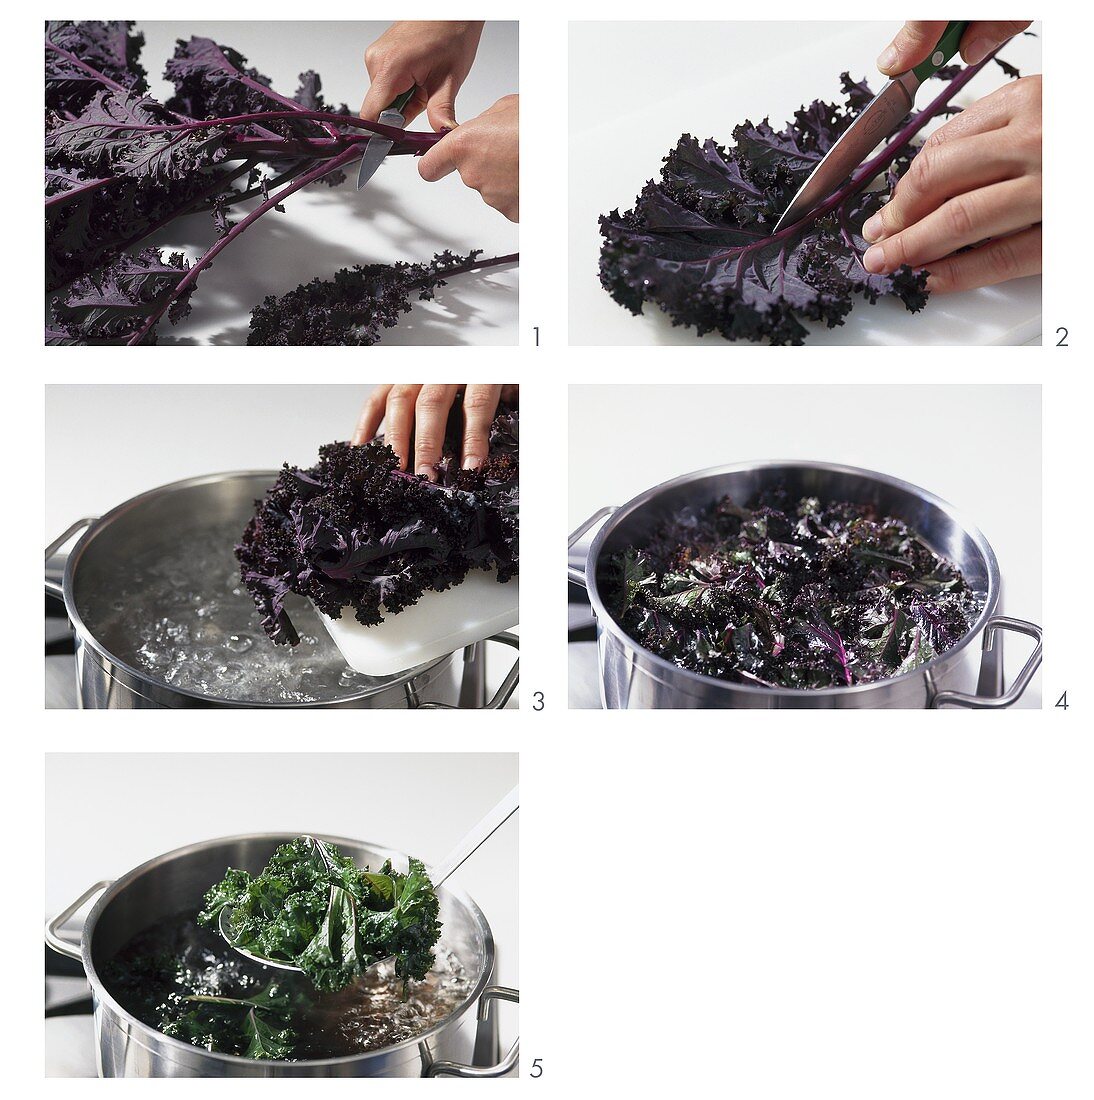 Preparing and blanching kale (variety: Redbor)